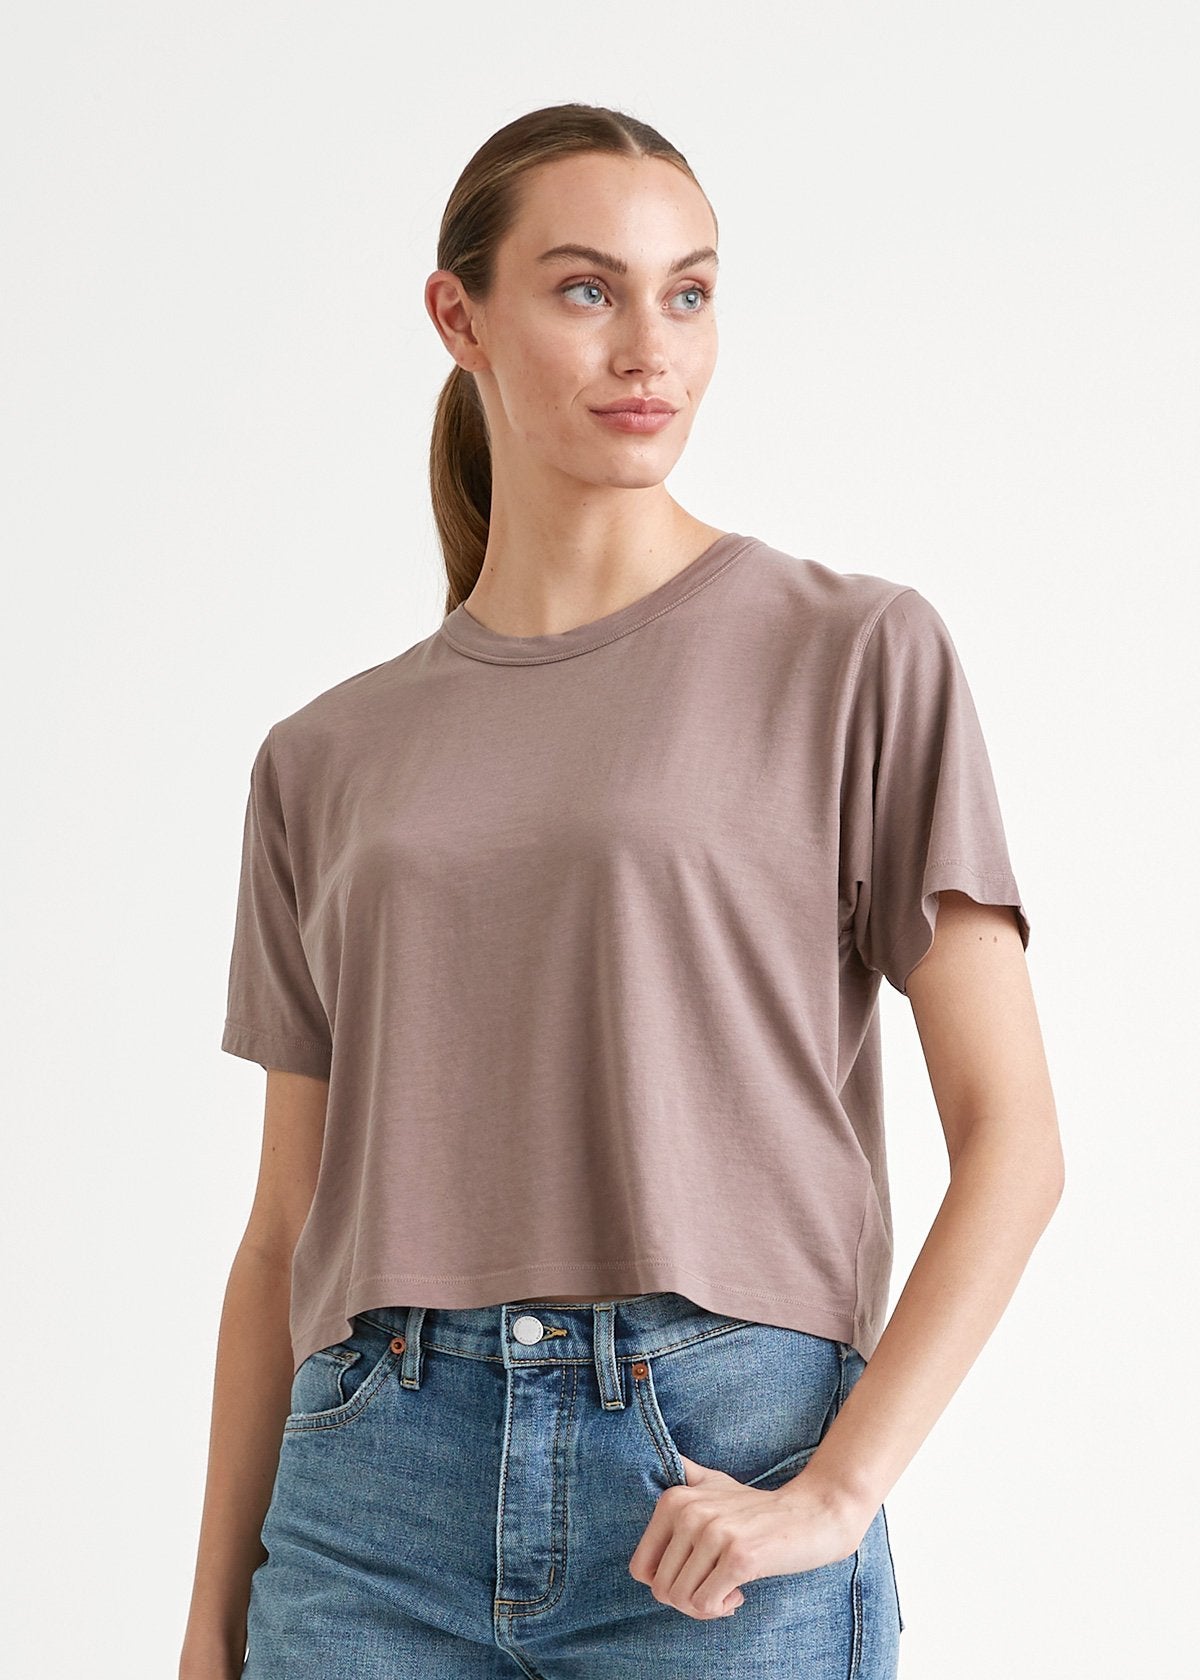 Women's light brown lightweight soft crop tshirt front